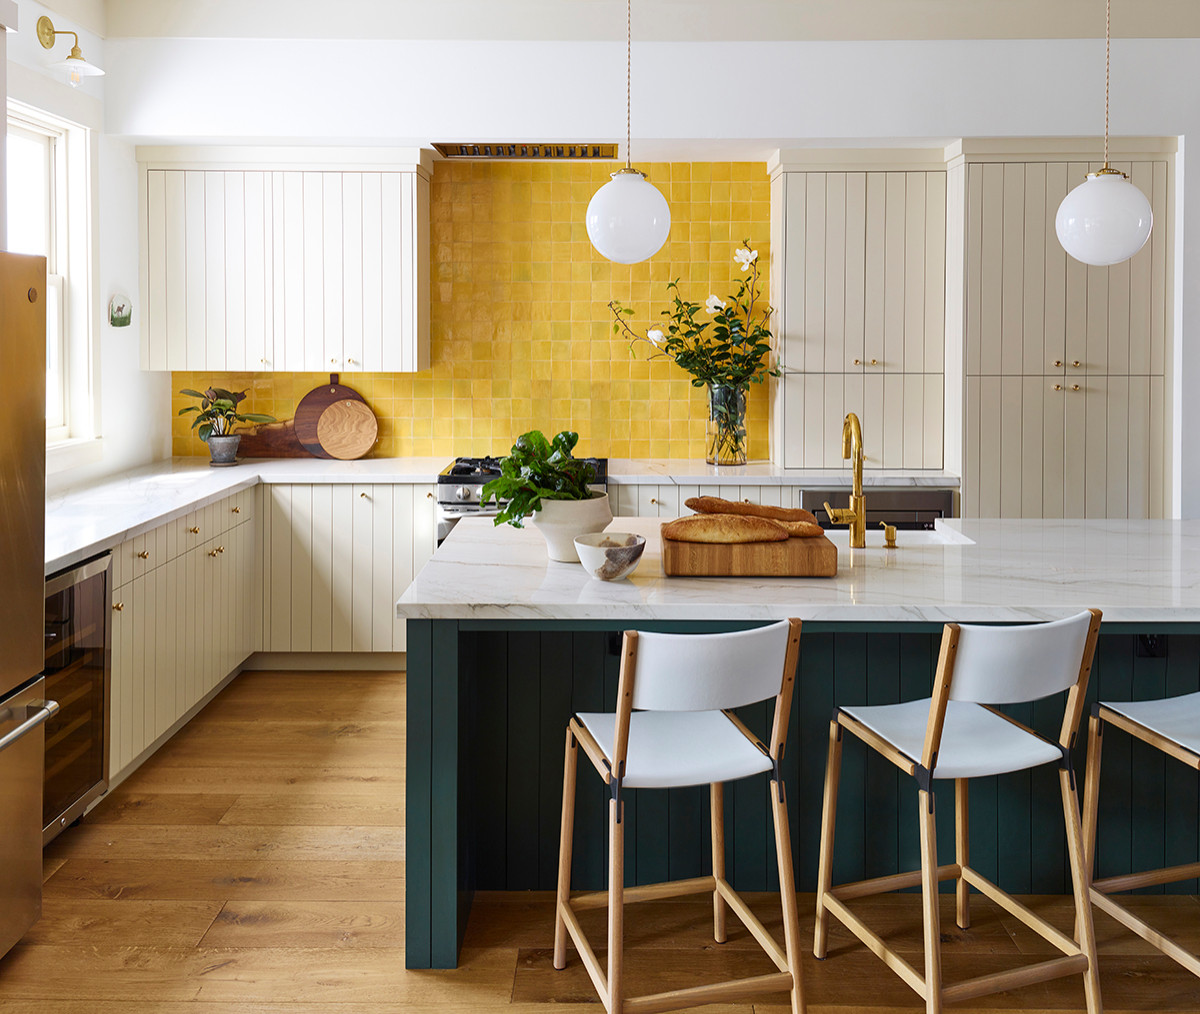 Màu vàng chanh - xanh lam đậm kết hợp hoàn hảo trong phòng bếp này.